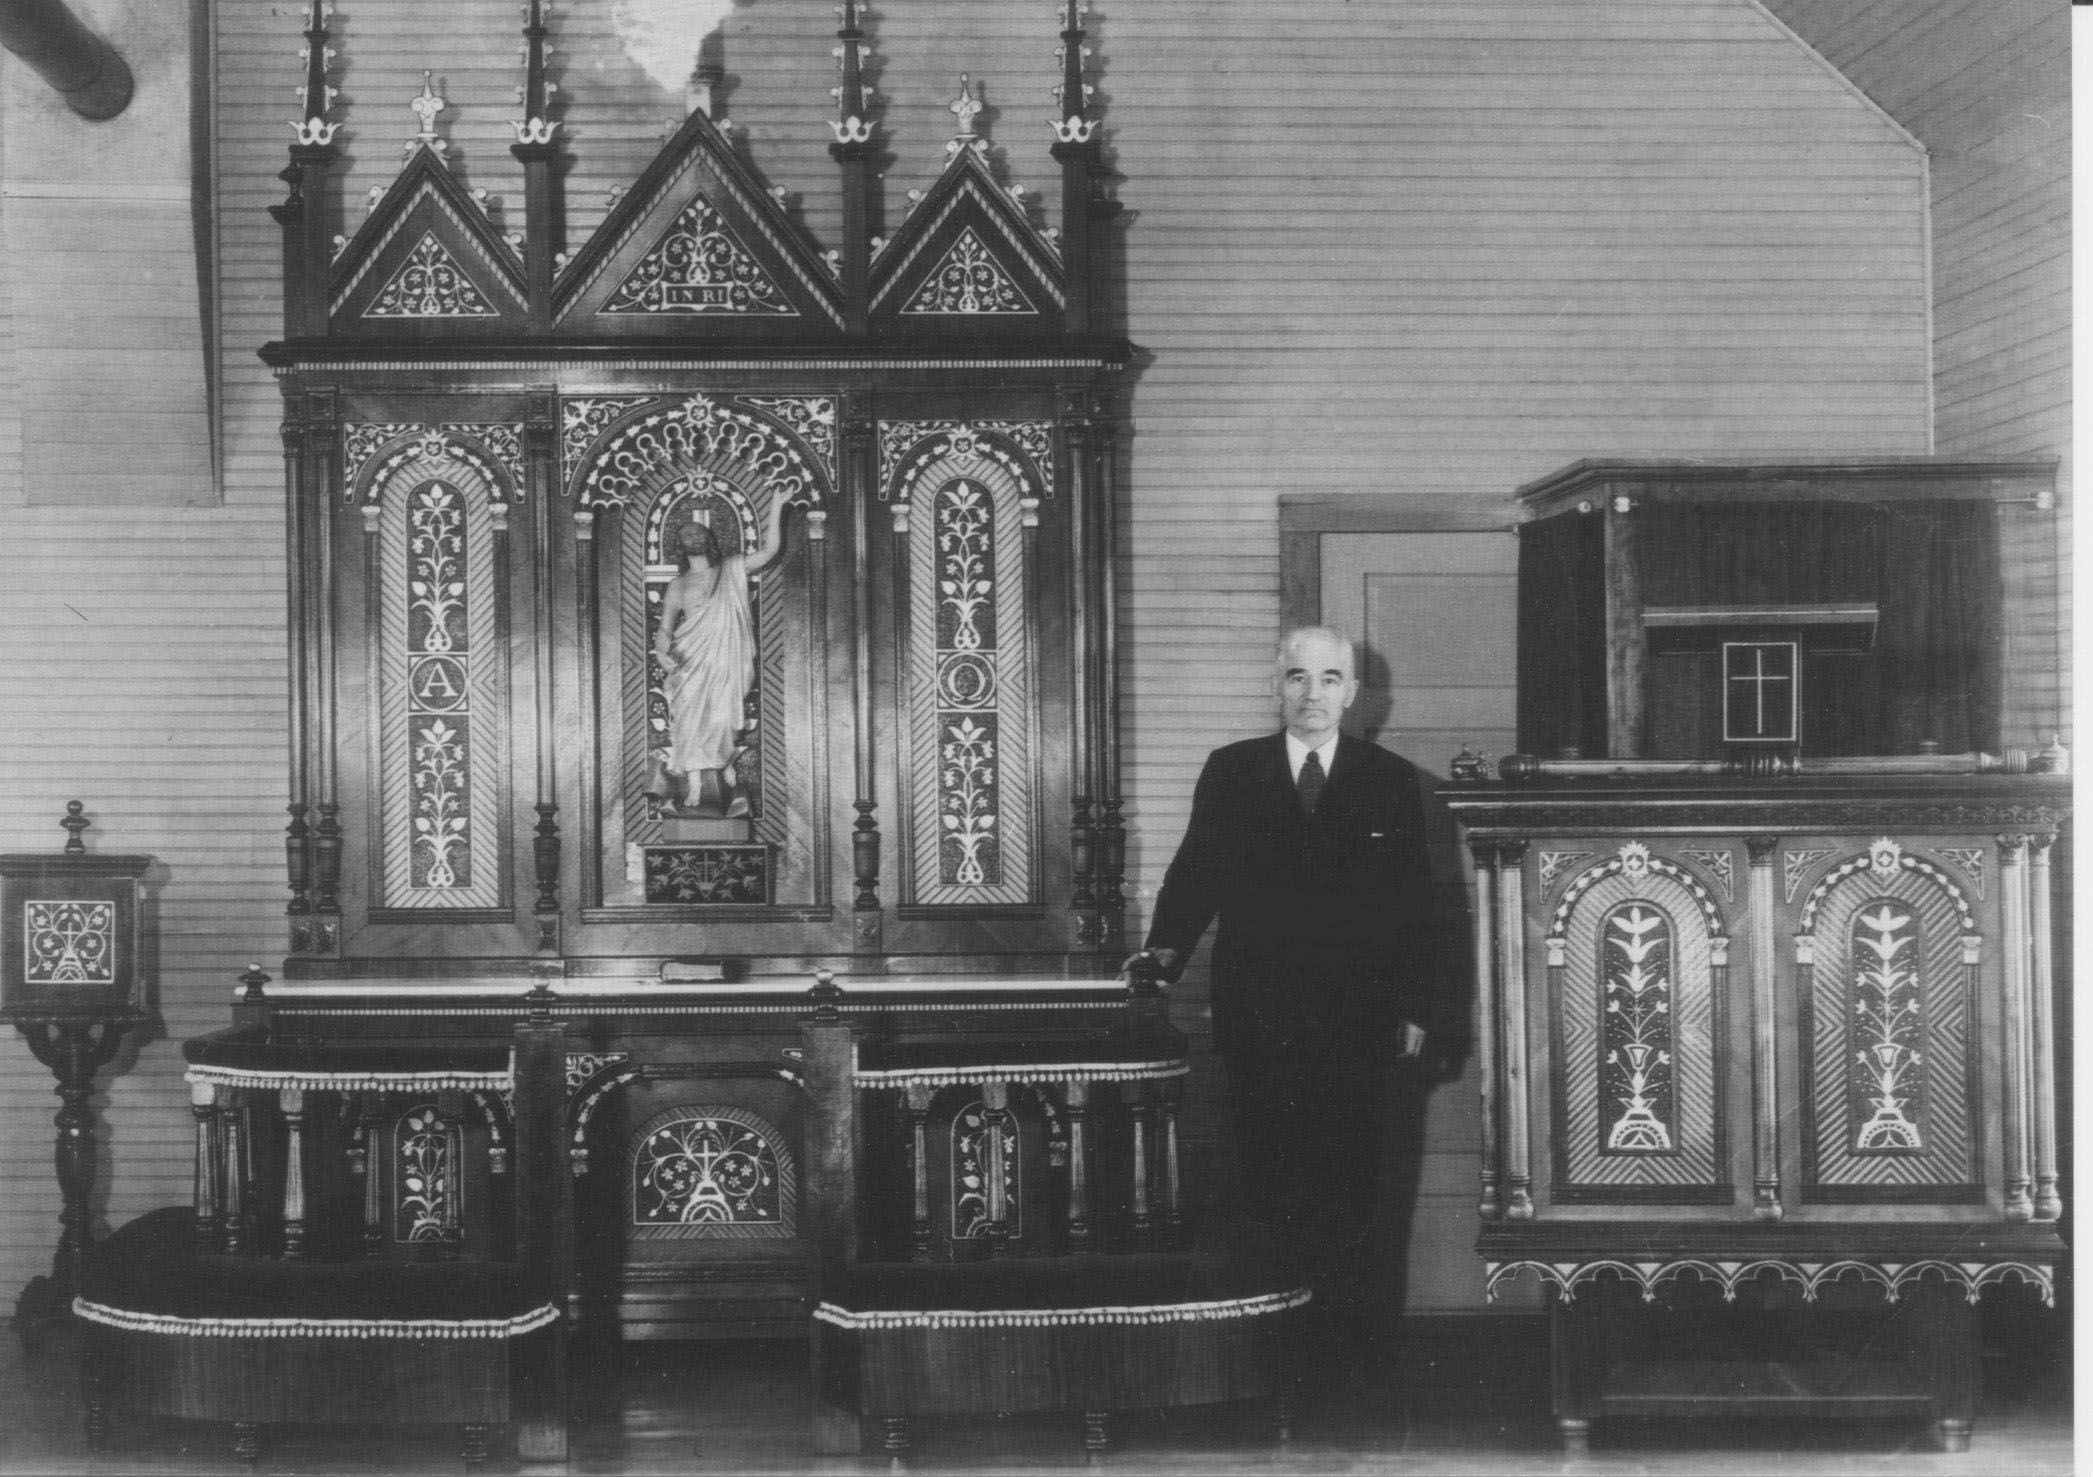 Johann Franzman with one of this altars